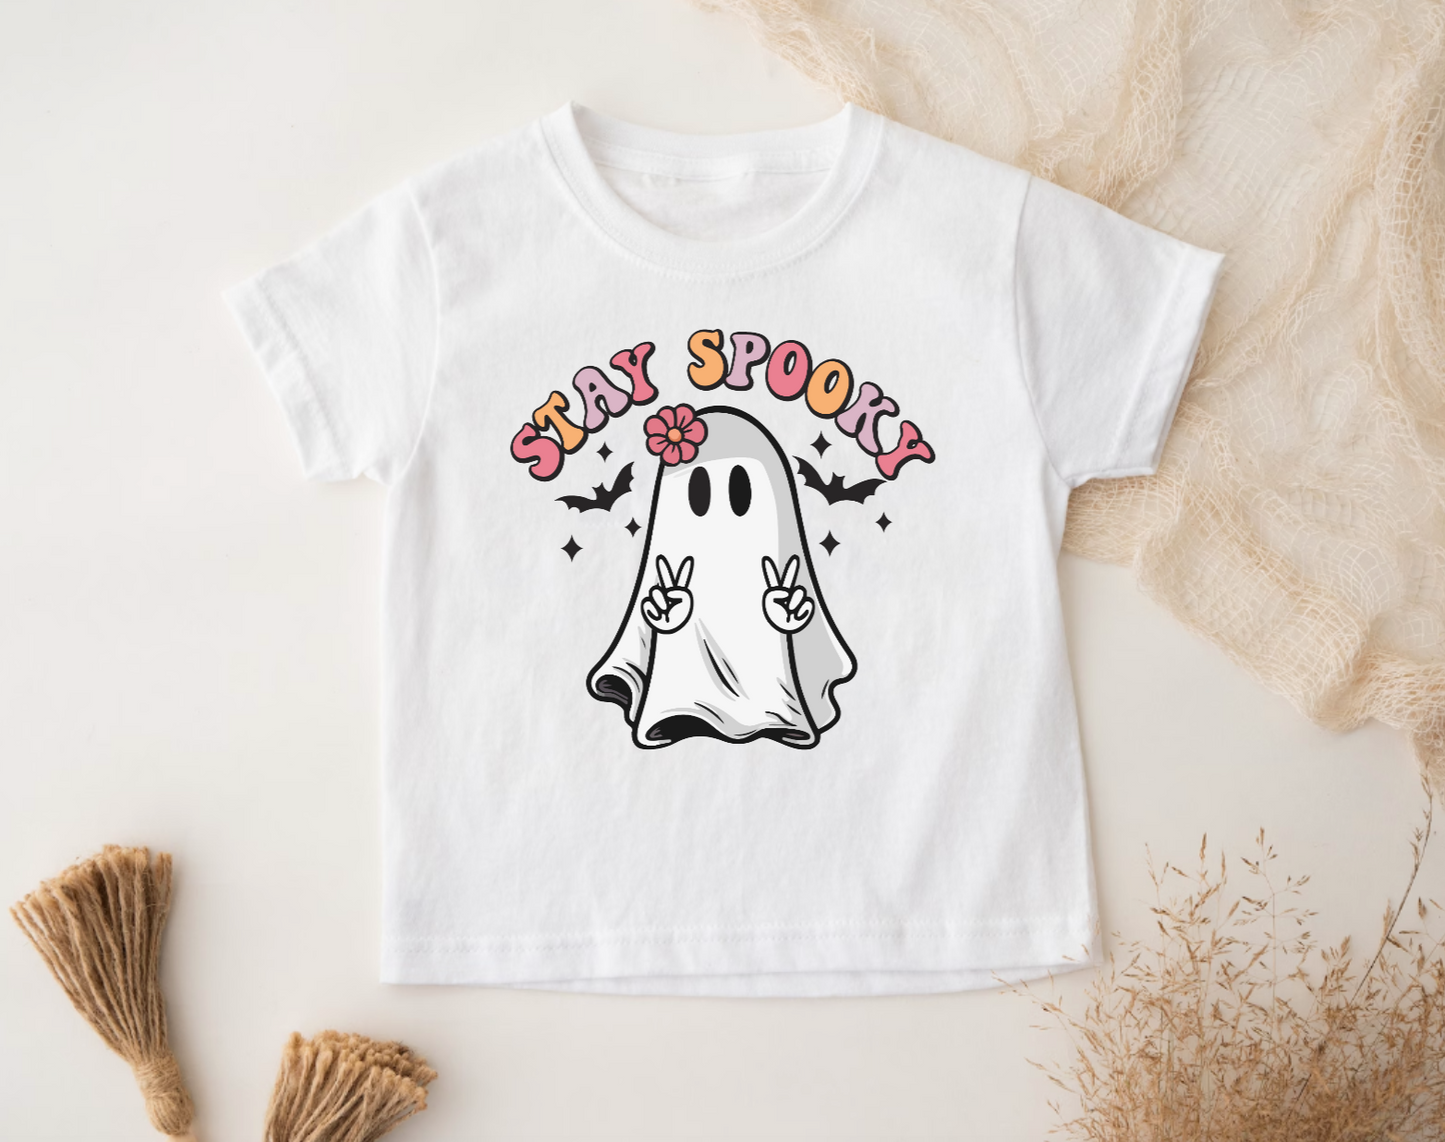 Stay Spooky Kids